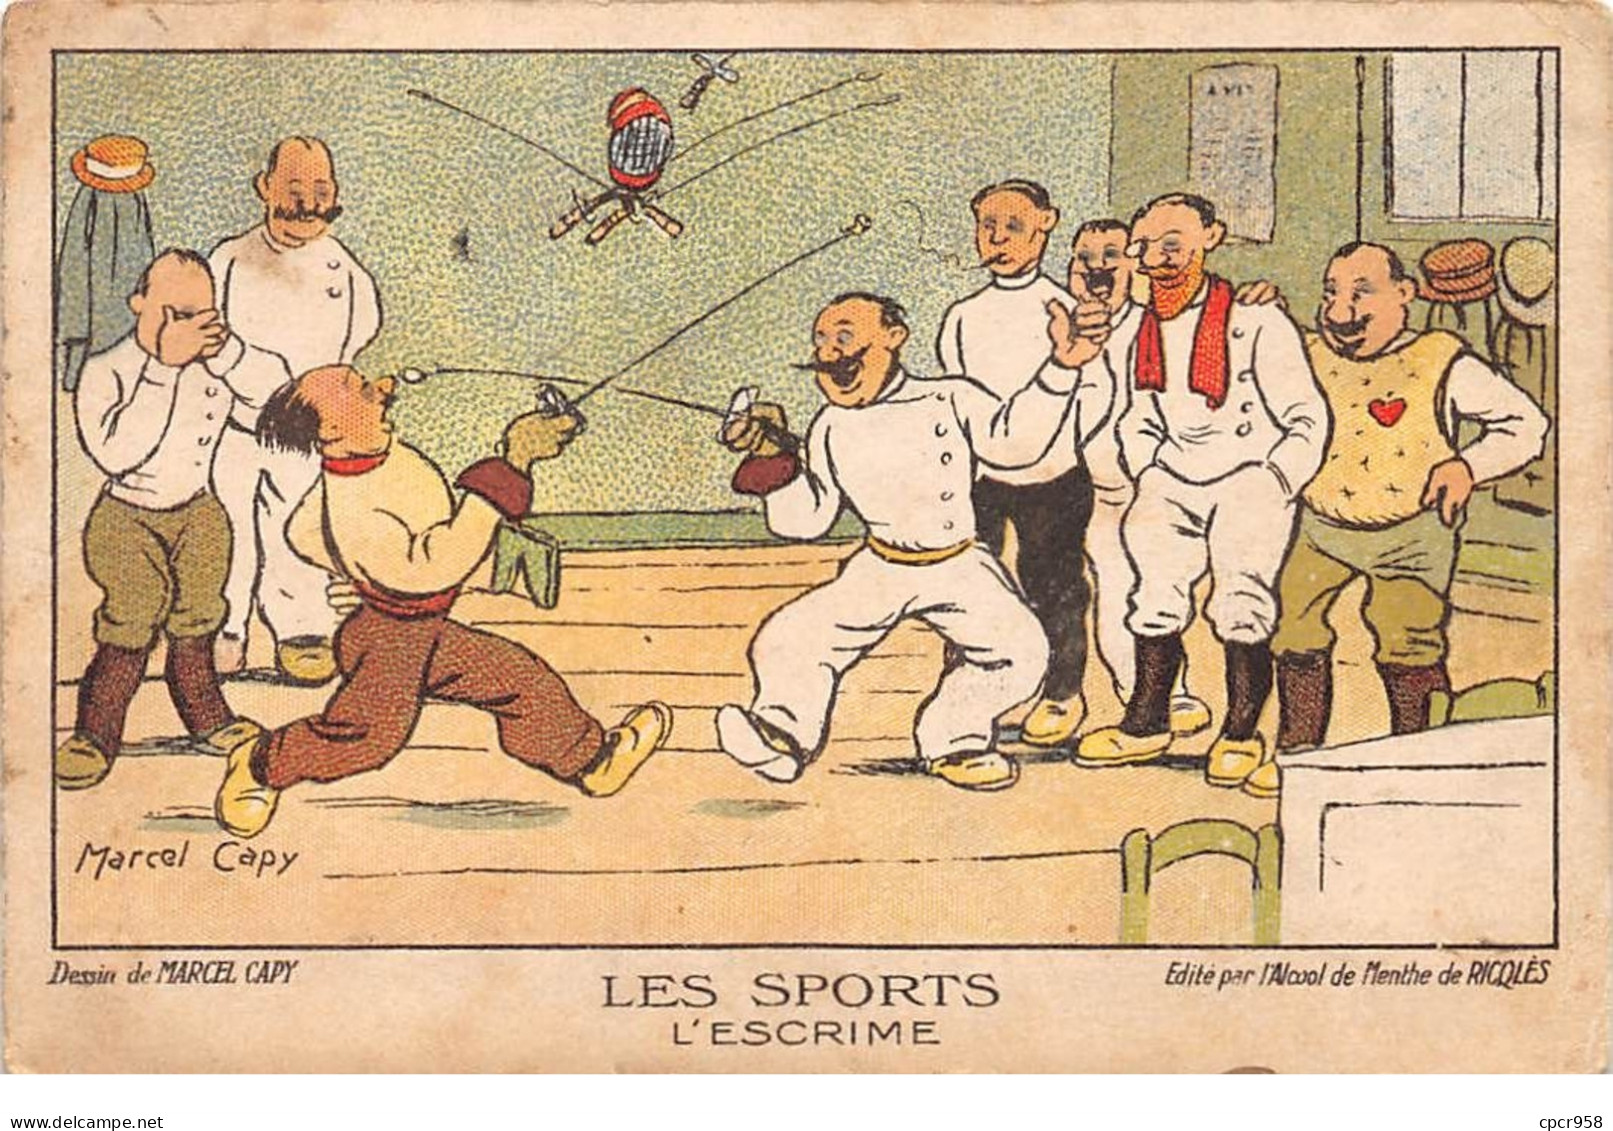 Sports - N°69102 - Escrime - Dessin De Marcel Capy - Alcool De Menthe De Ricqlès - Carte Publicitaire - Fechten